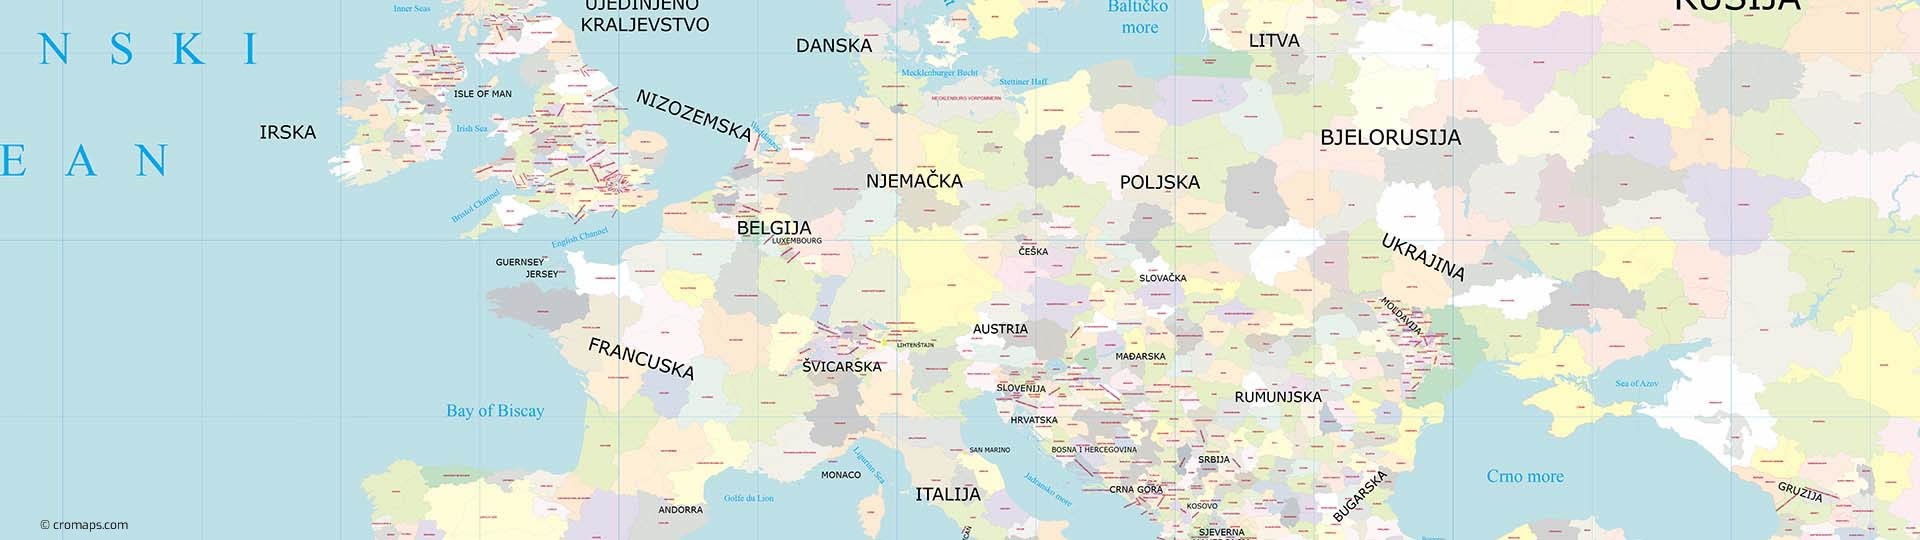 Europa - prikaz regija europskih država, zidna karta na platnu s letvicama